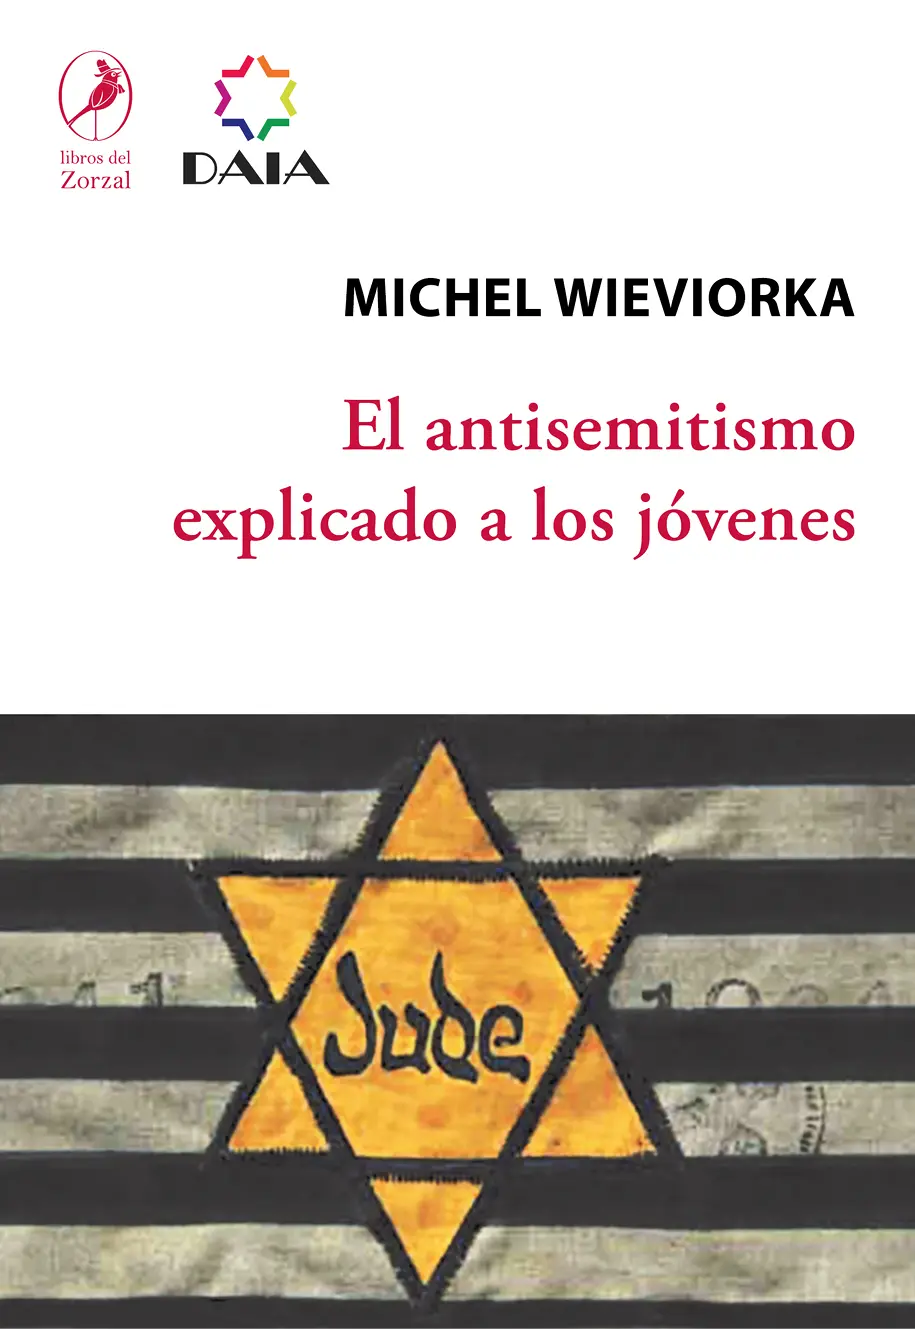 Michel Wieviorka El antisemitismo explicado a los jóvenes Traducido por - фото 1